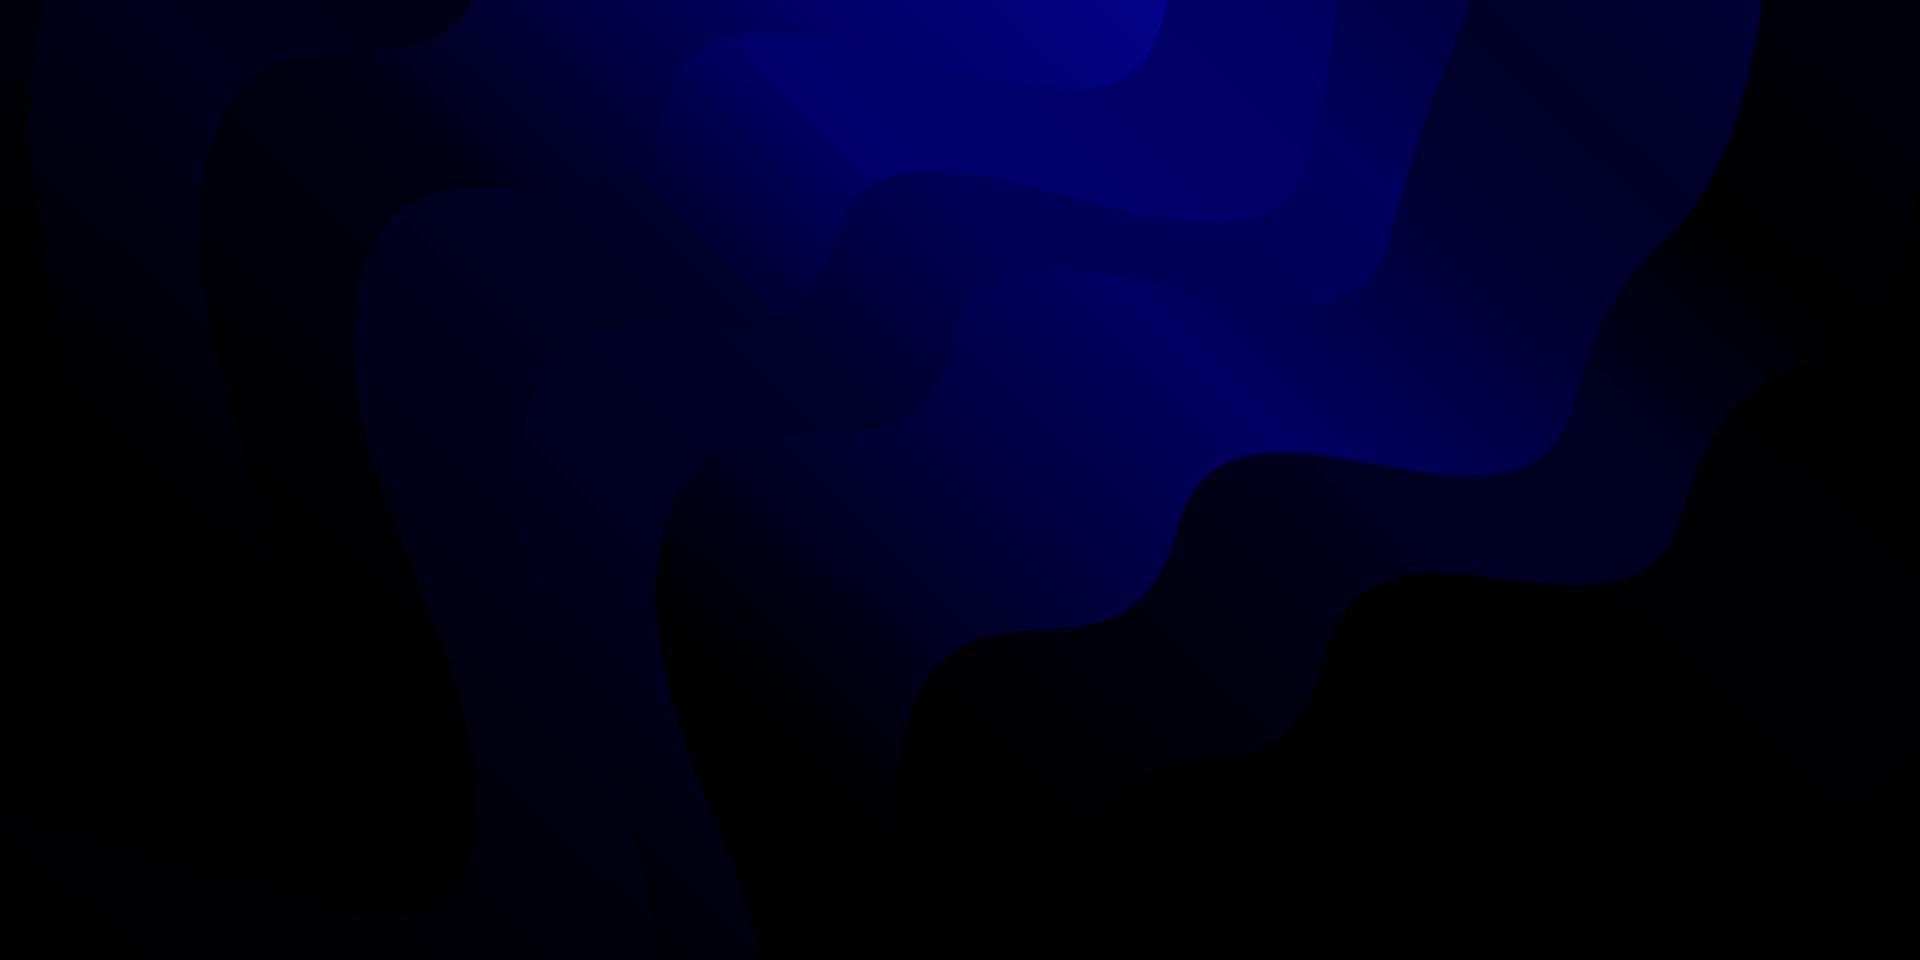 plantilla de vector azul oscuro con líneas.